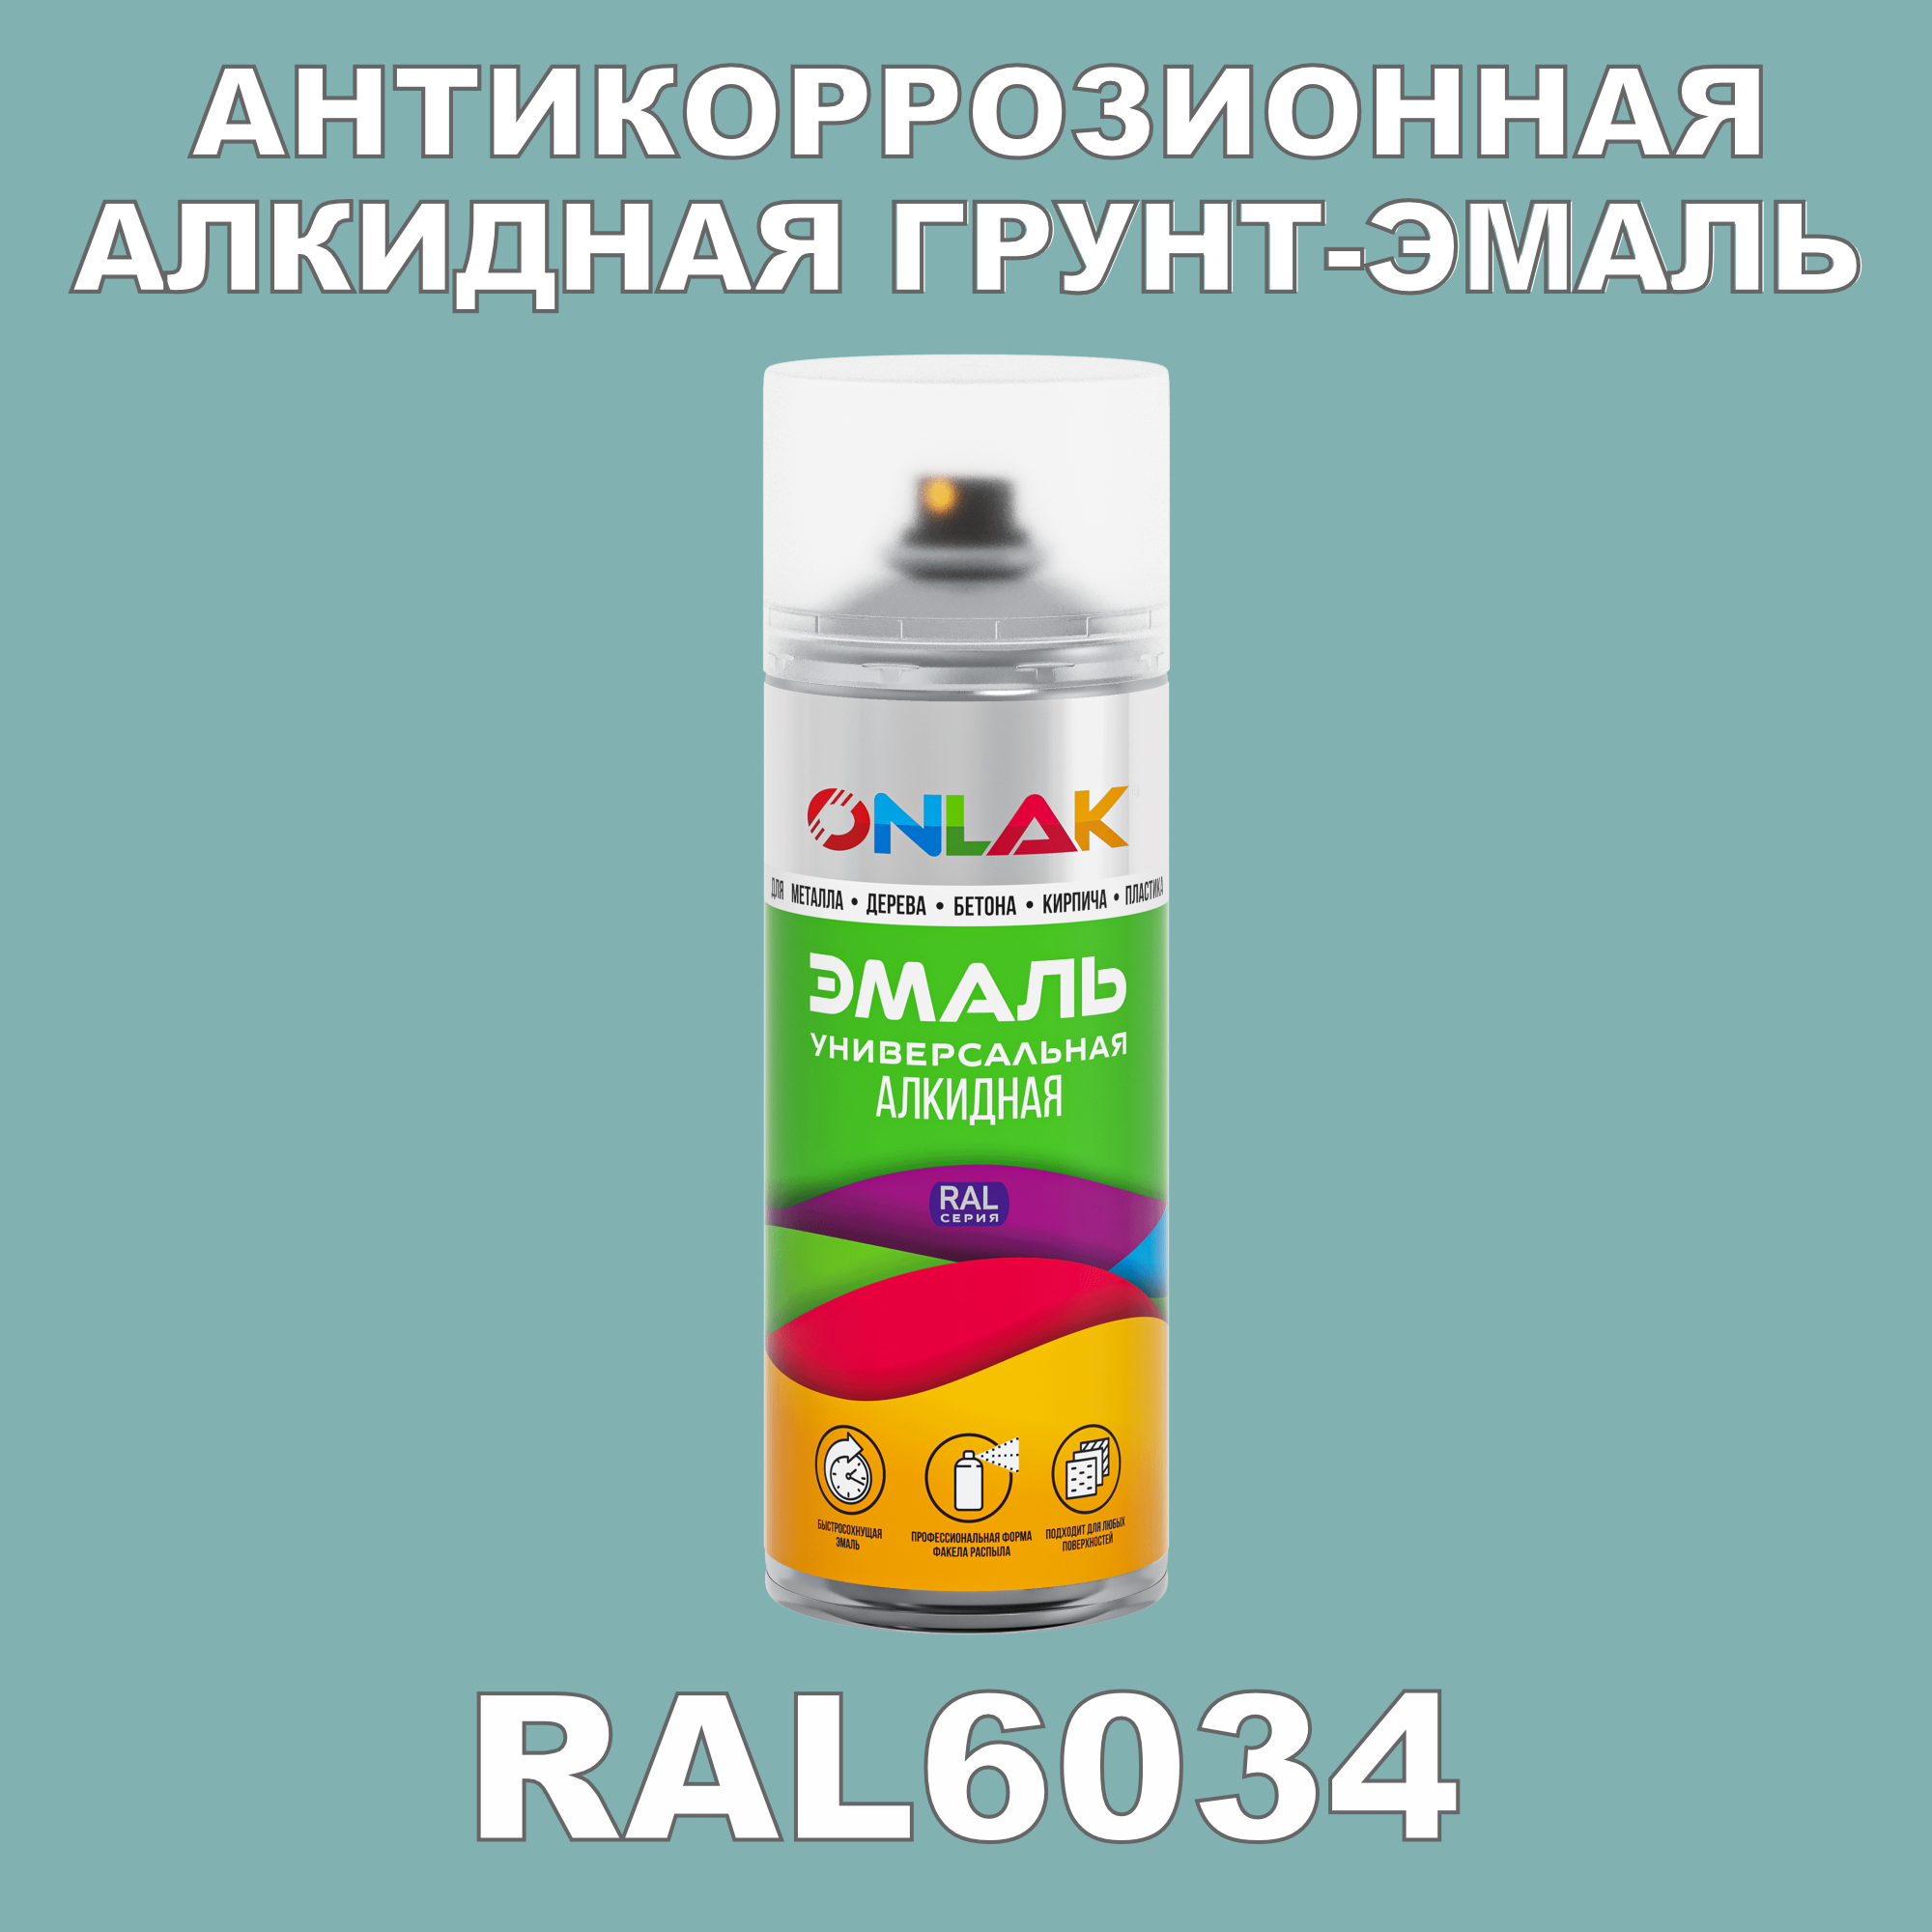 Антикоррозионная грунт-эмаль ONLAK RAL 6034,зеленый,689 мл фильтр для краскопульта scentury 30 mesh зеленый